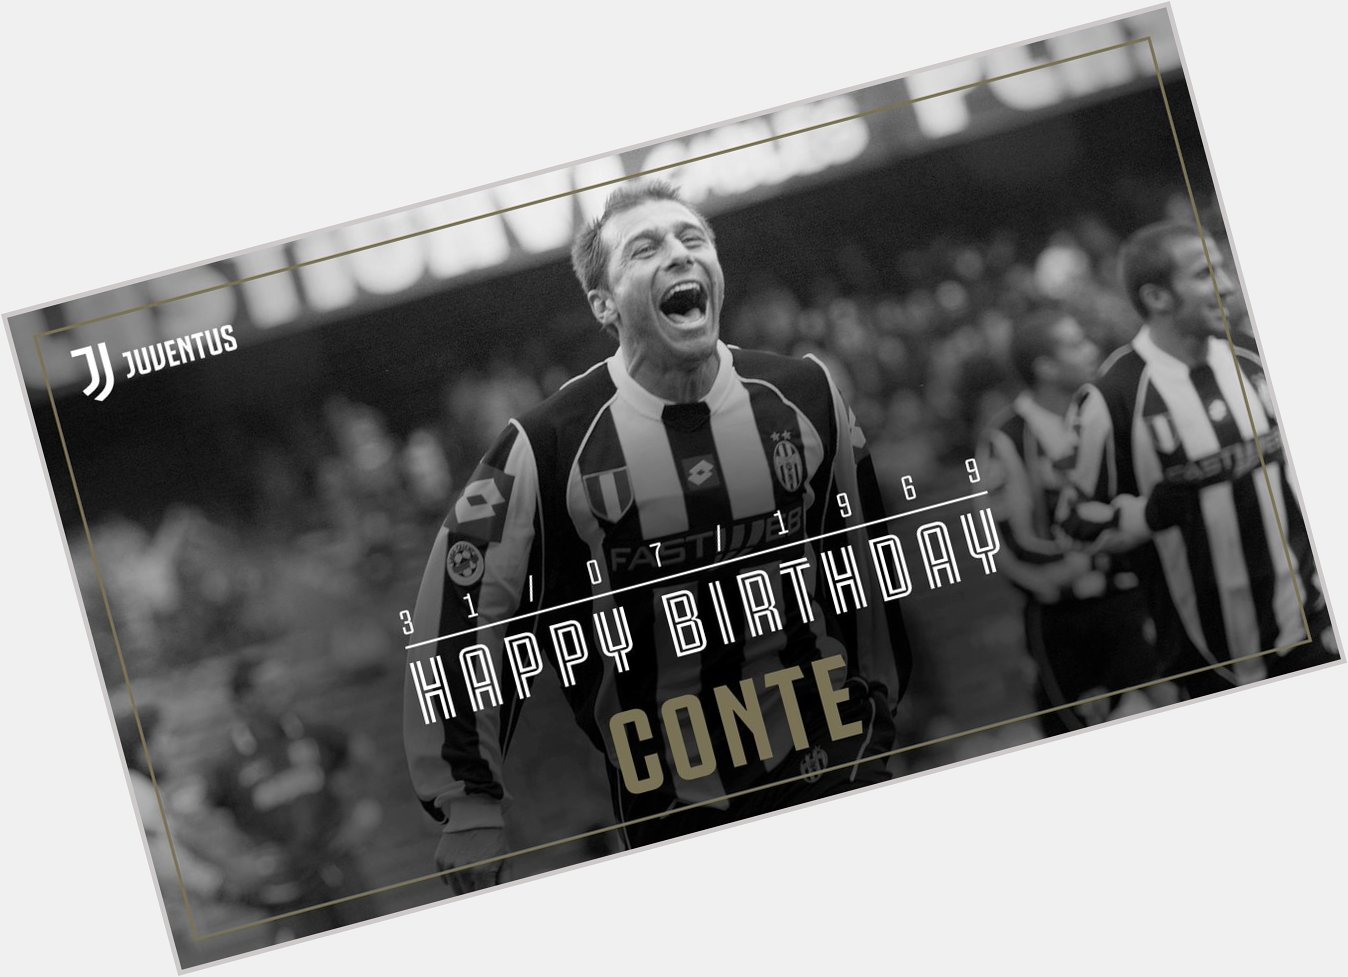 Happy 50th birthday to Antonio Conte! 